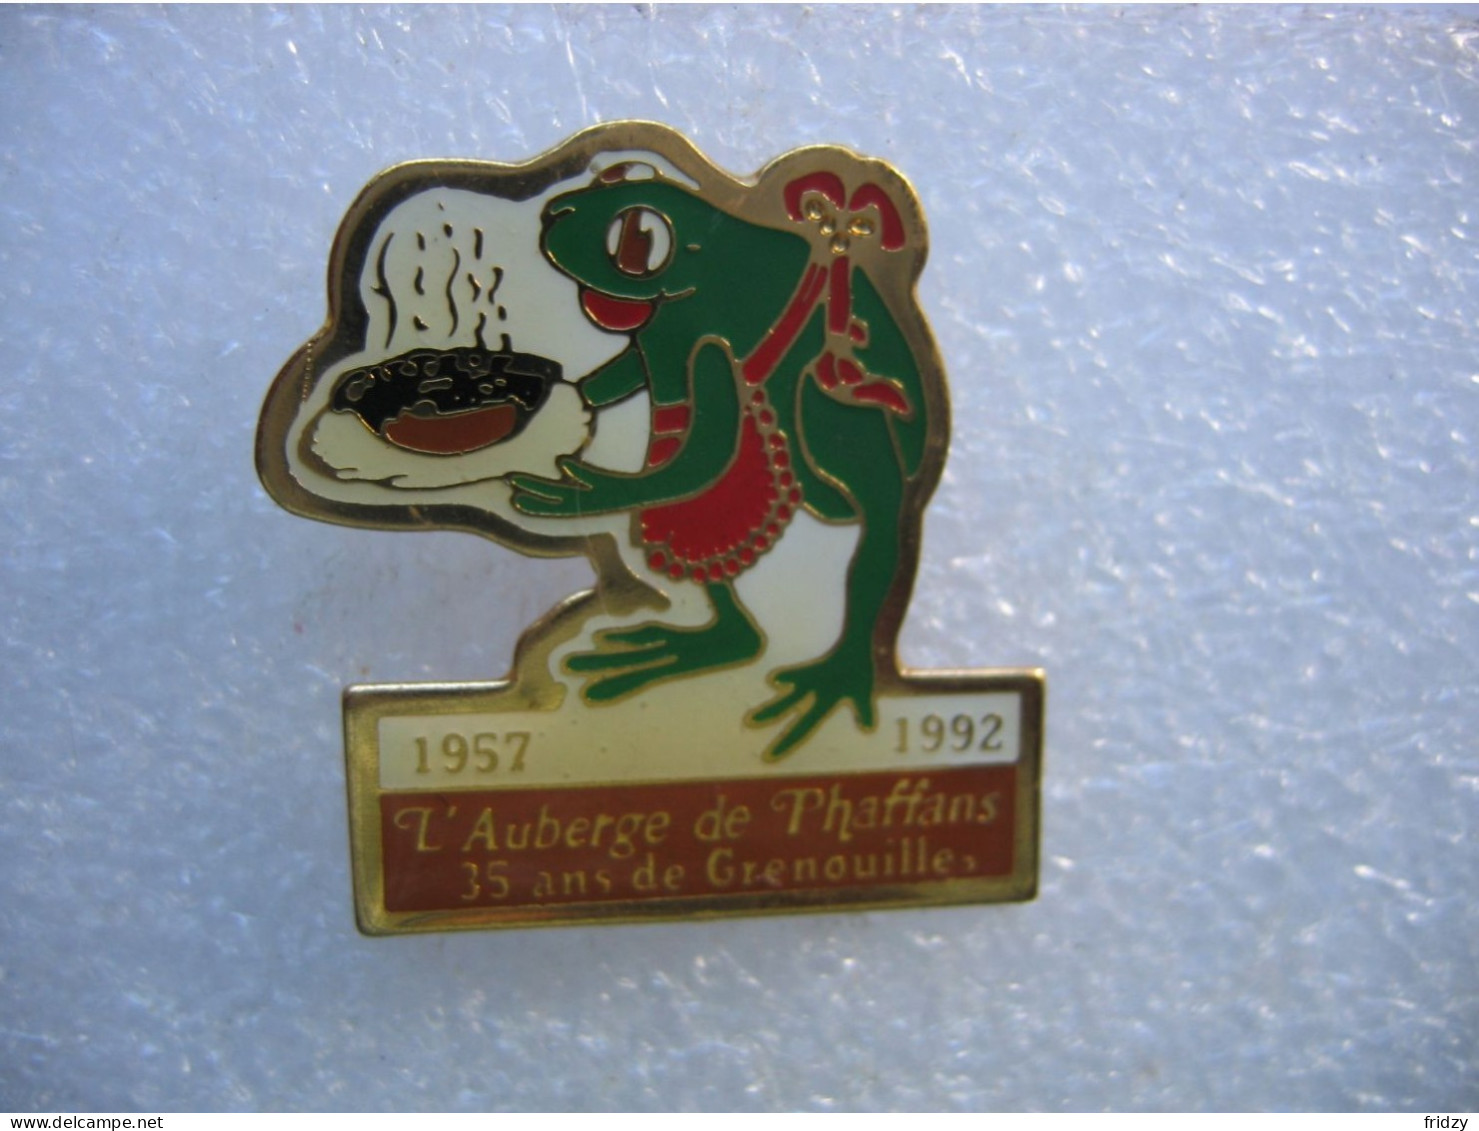 Pin's Frog, 1957-1992 L'auberge De Phaffans (Dépt 90), 35 Ans De Grenouilles - Food